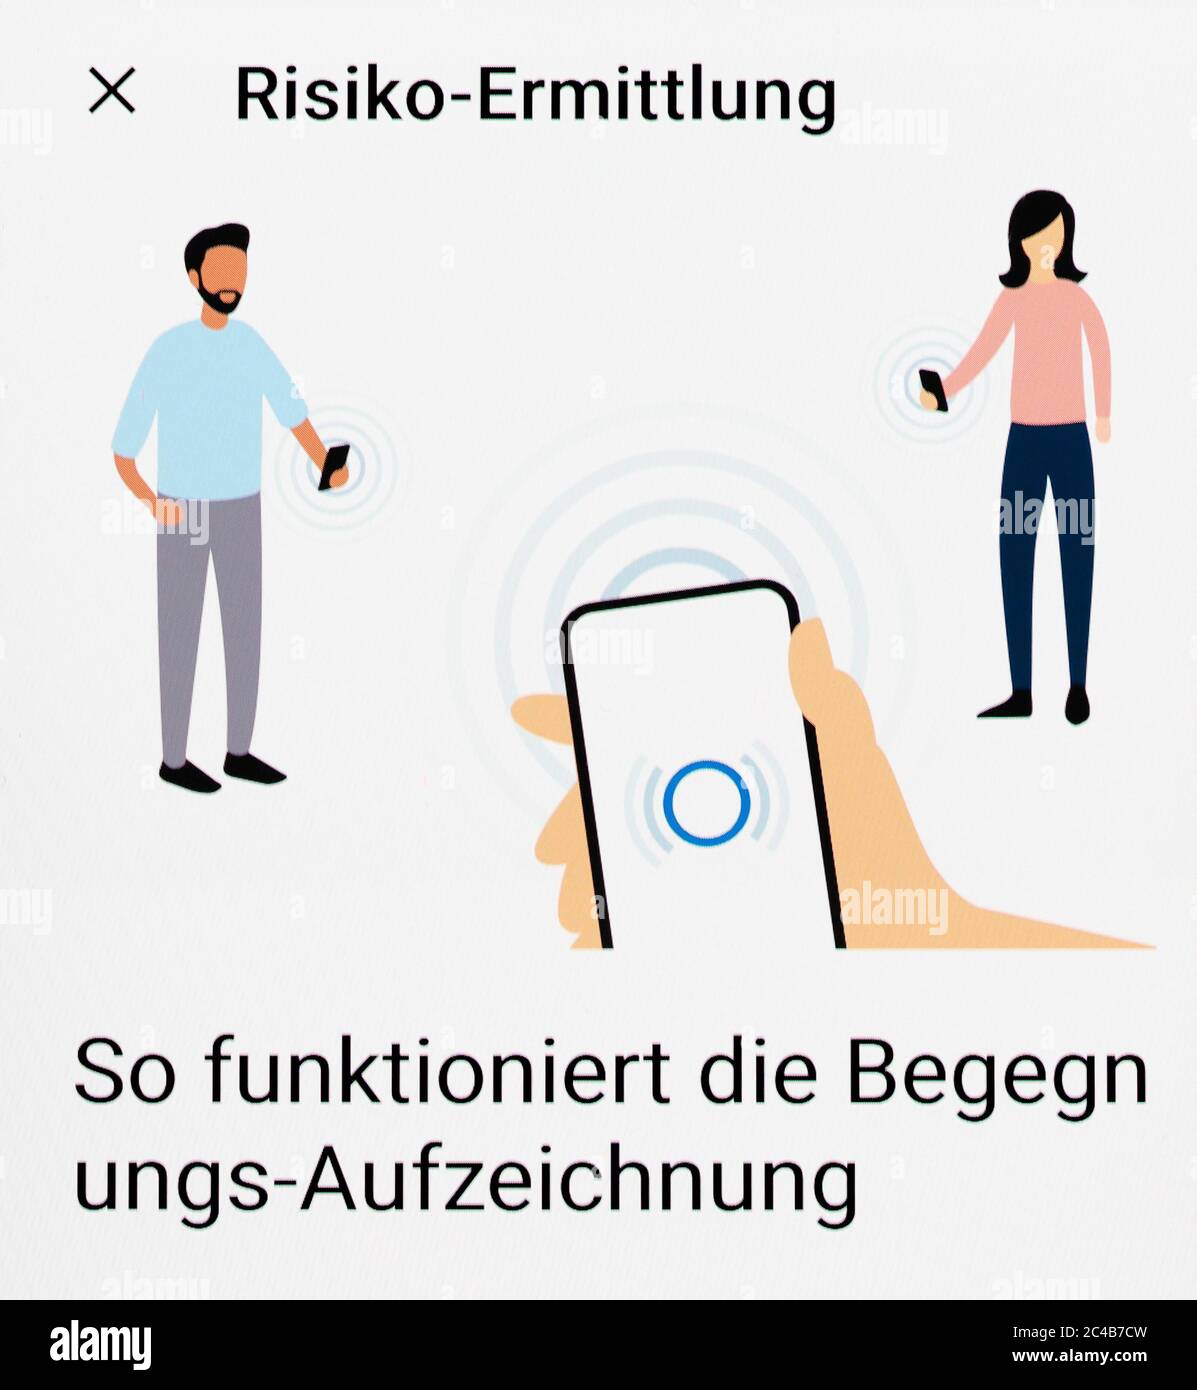 Corona-Warn-App, Risikobeurteilung, wie die Aufzeichnungs-Aufzeichnung funktioniert, Handy-Display, Deutschland Stockfoto